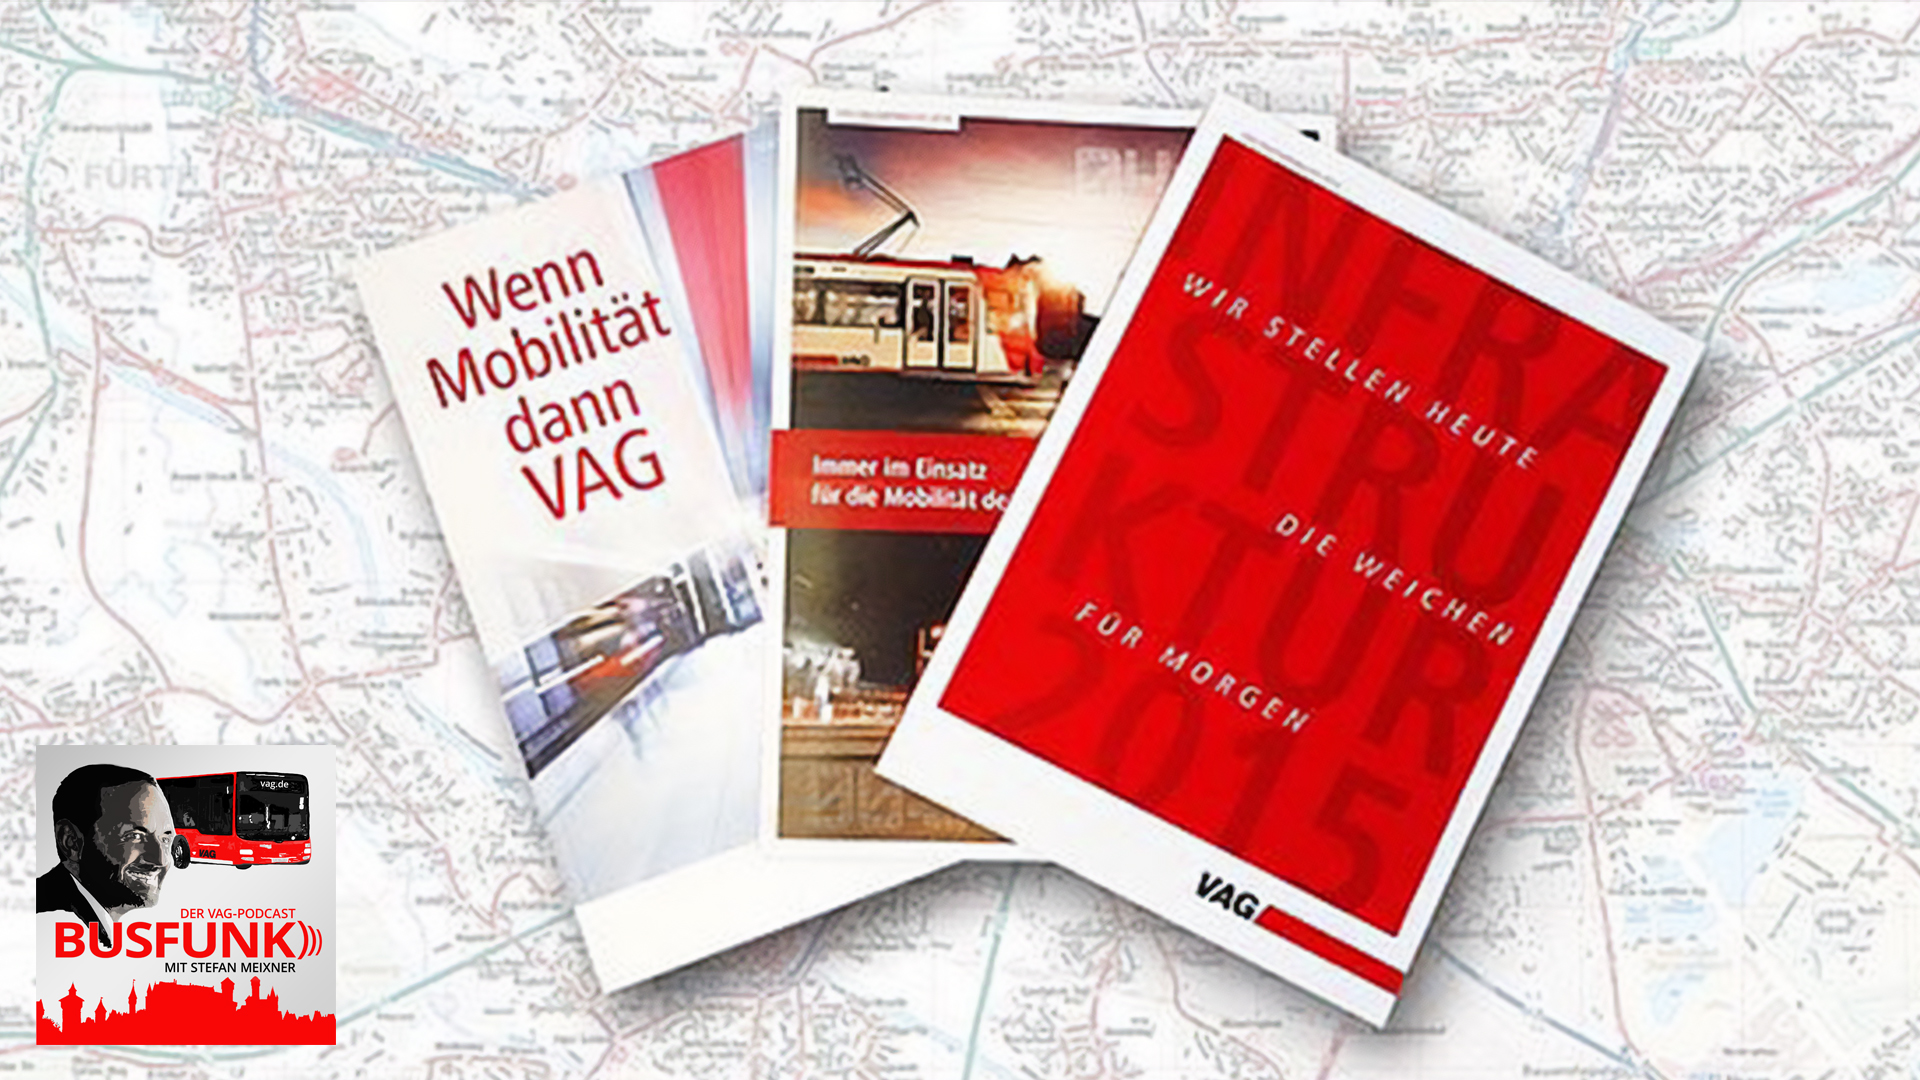 Busfunk-Cover und Publikationen der VAG vor einem Stadtplan